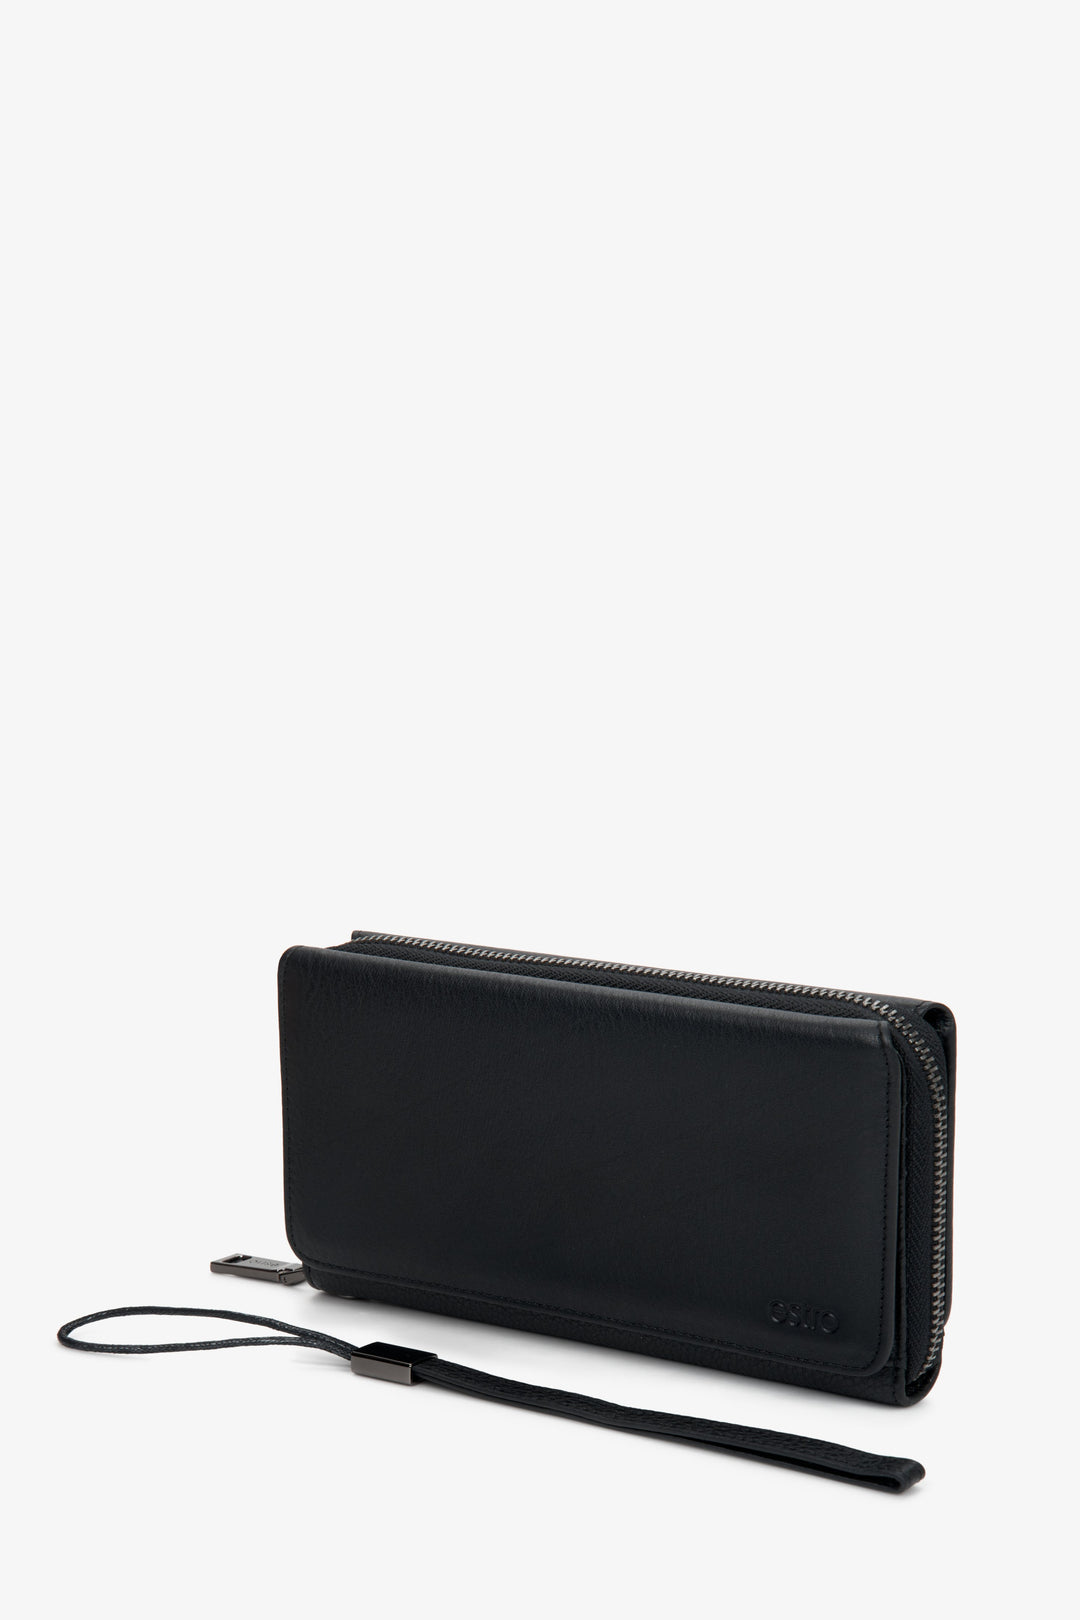 Men's  black leather wallet by Estro.